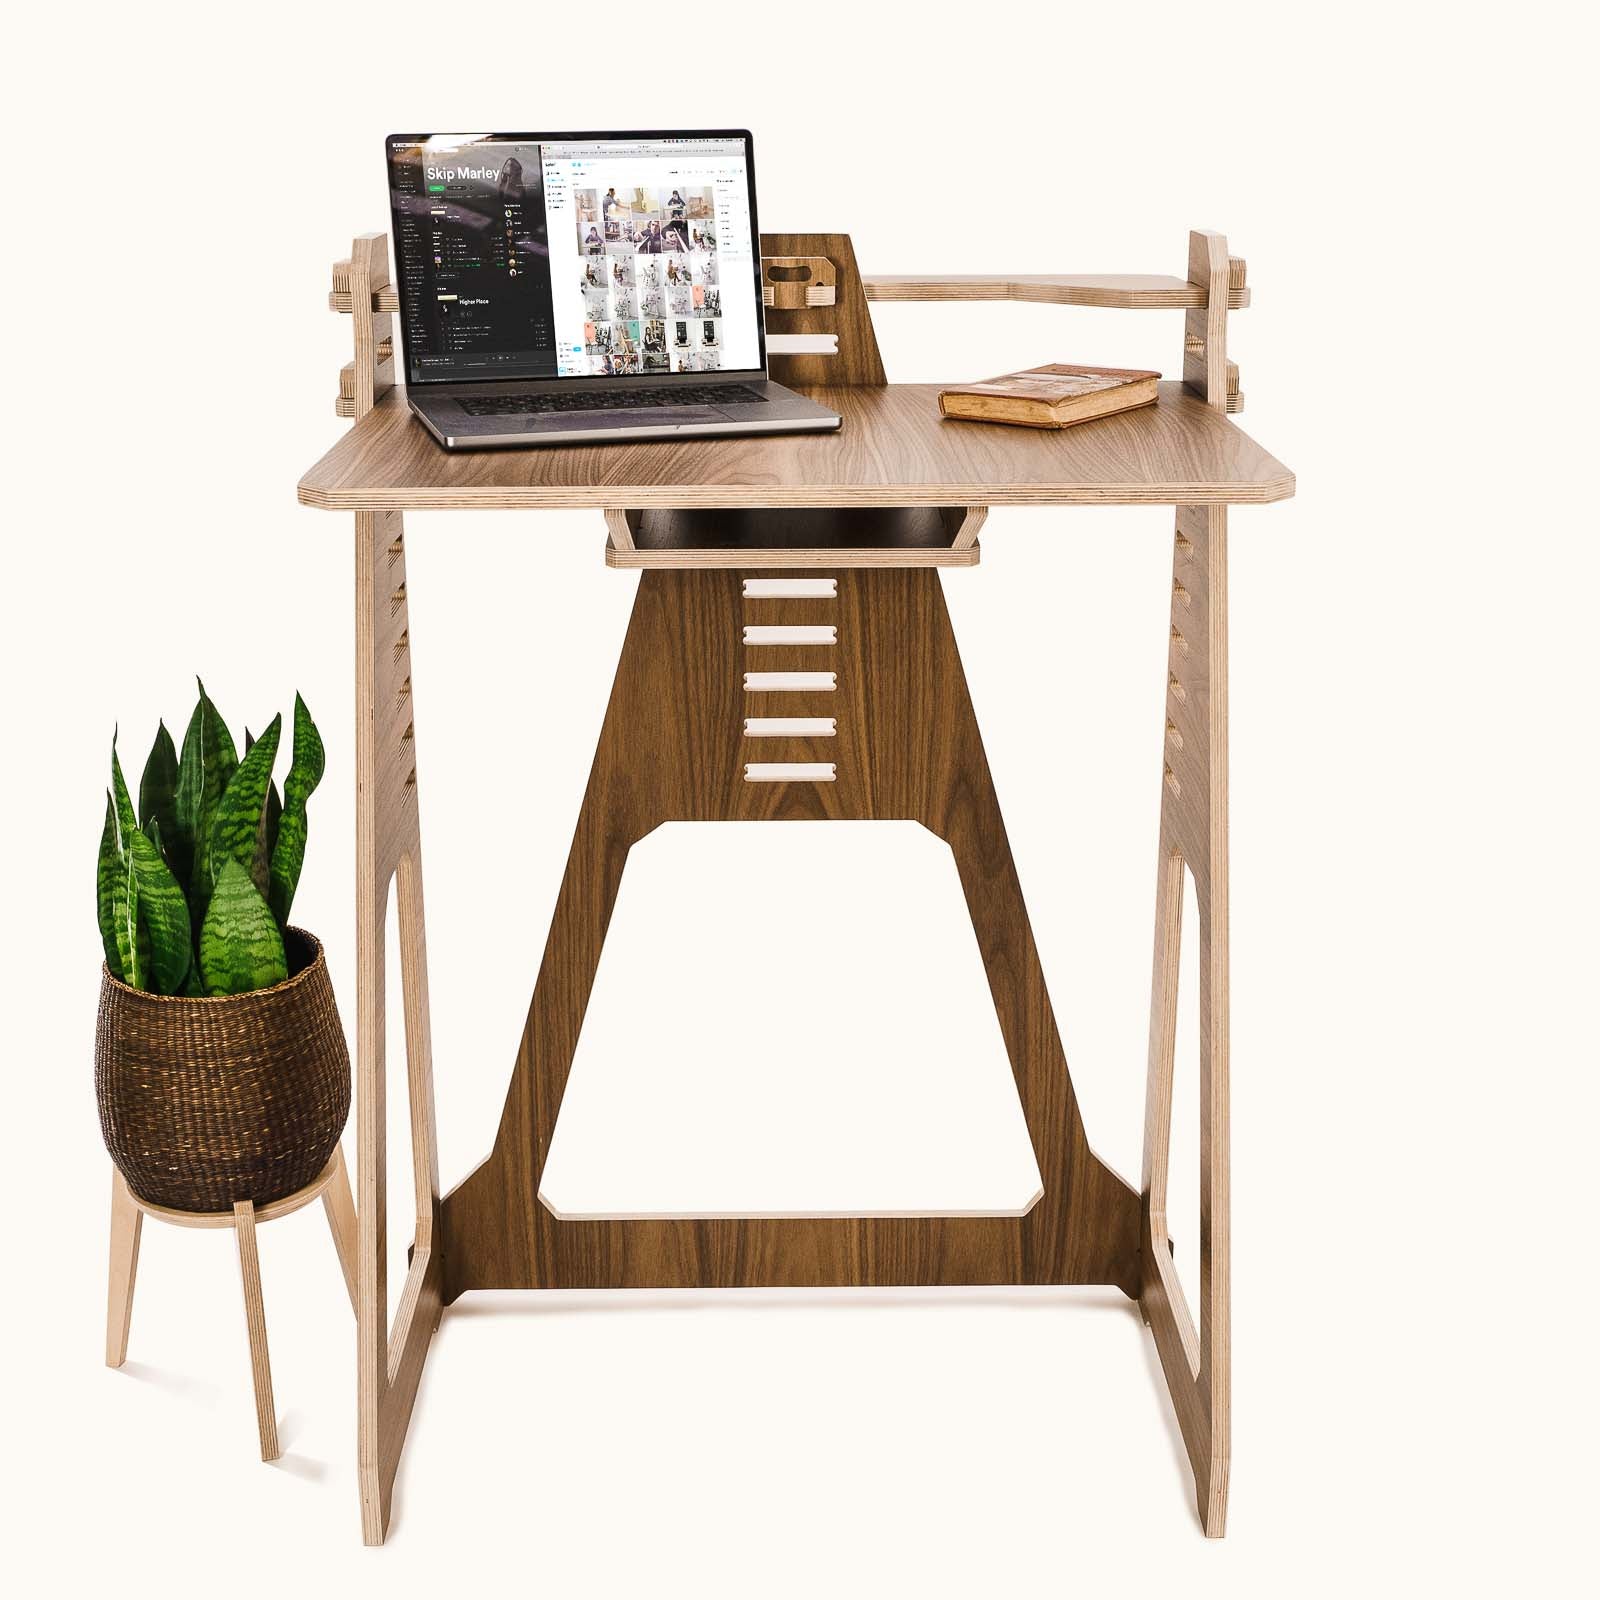 Blog - Marleylilly Blog: Work from Home Essentials & Desk Accessories